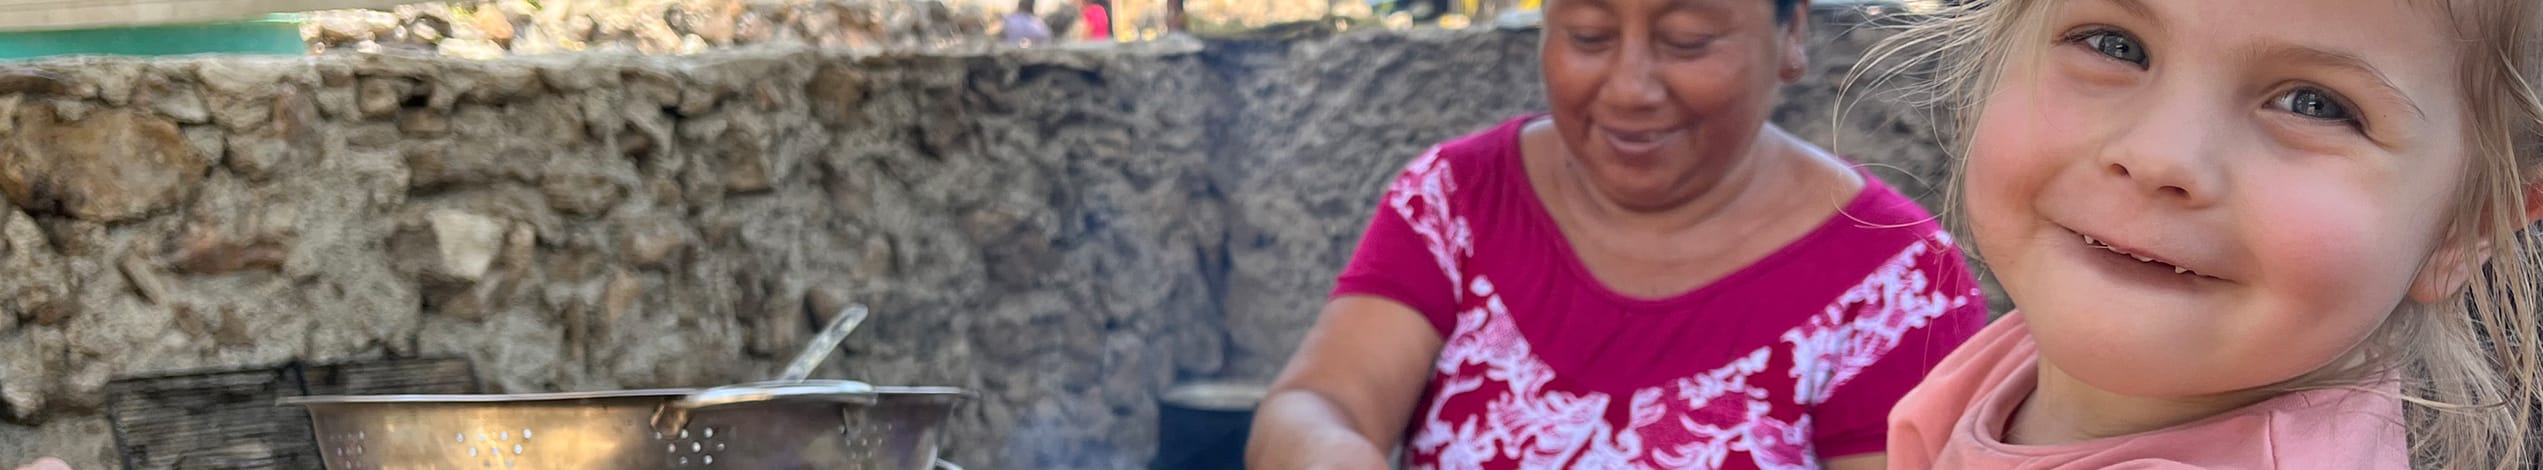 Mexico, Merida, Ellen laver mad med lokale